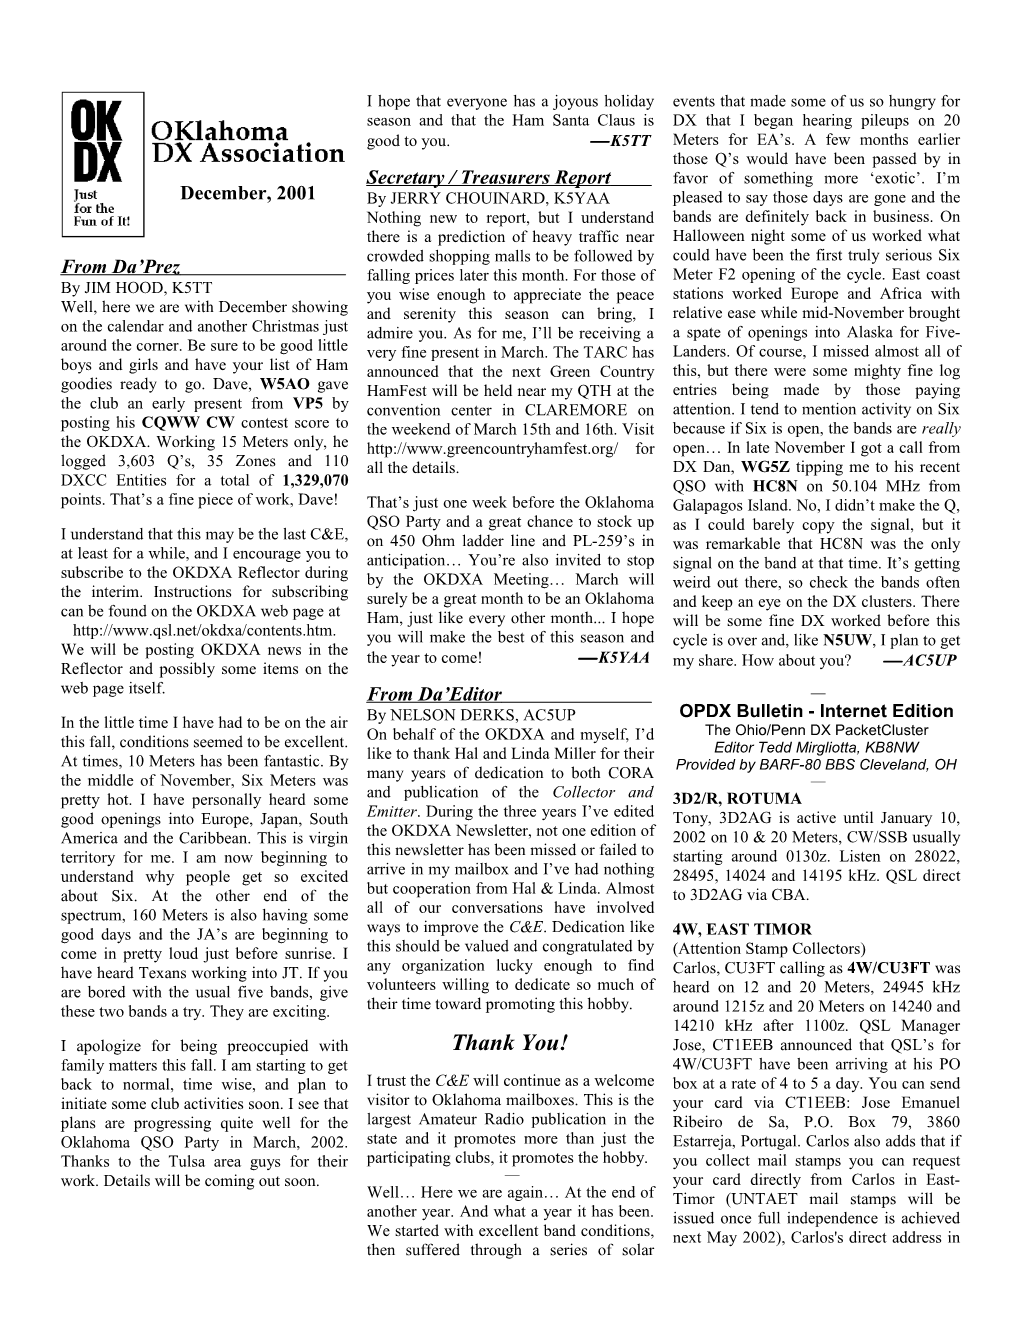 OKDXA Newsletter for December, 2001